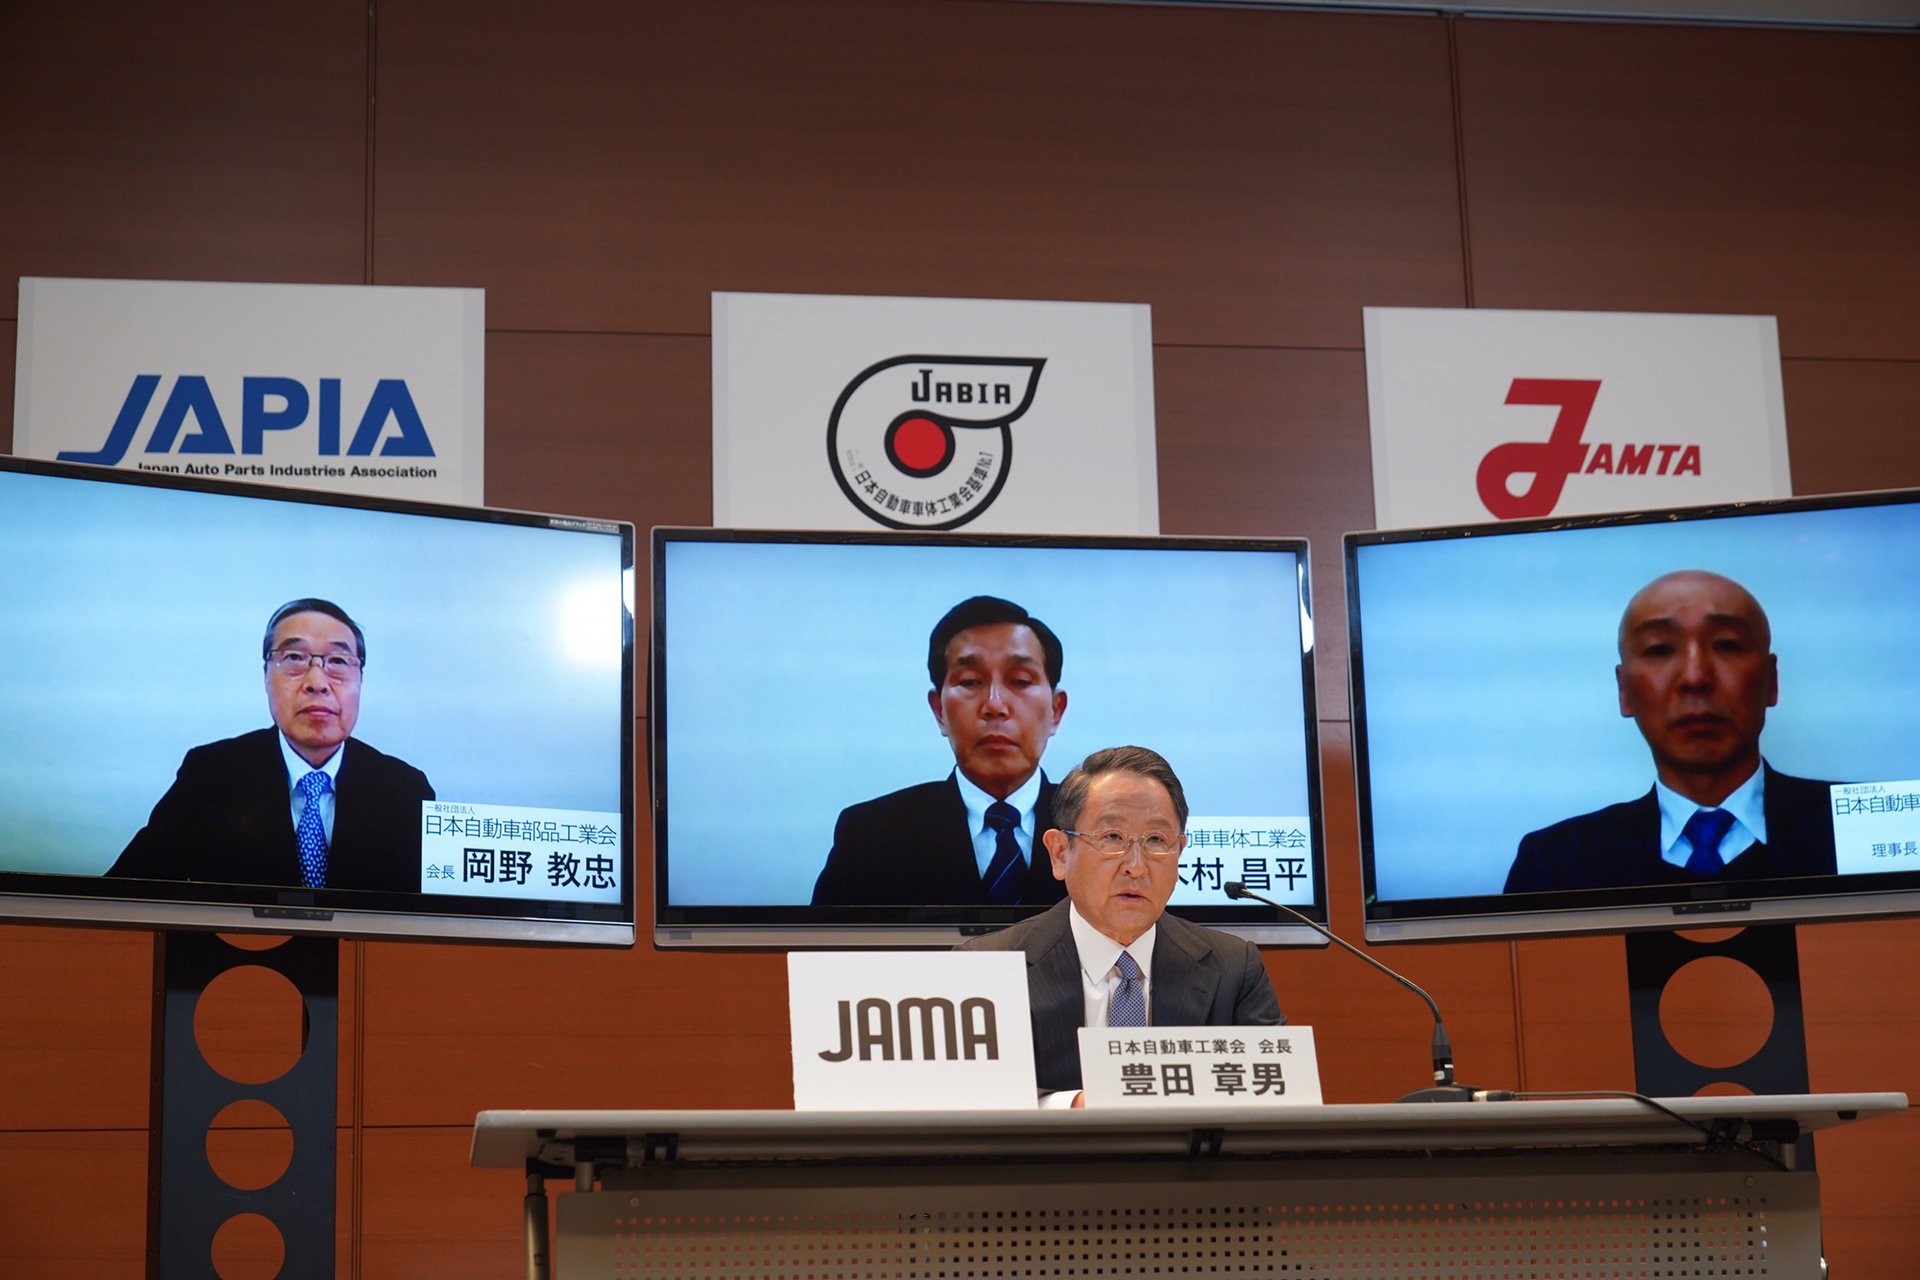 Ông Akio Toyoda Chủ tịch JAMA (Hiệp hội các nhà sản xuất ô tô Nhật Bản) phát biểu thông điệp của Hiệp hội các nhà sản xuất ô tô của Nhật Bản nhằm đáp lại sự lây lan của COVID-19.